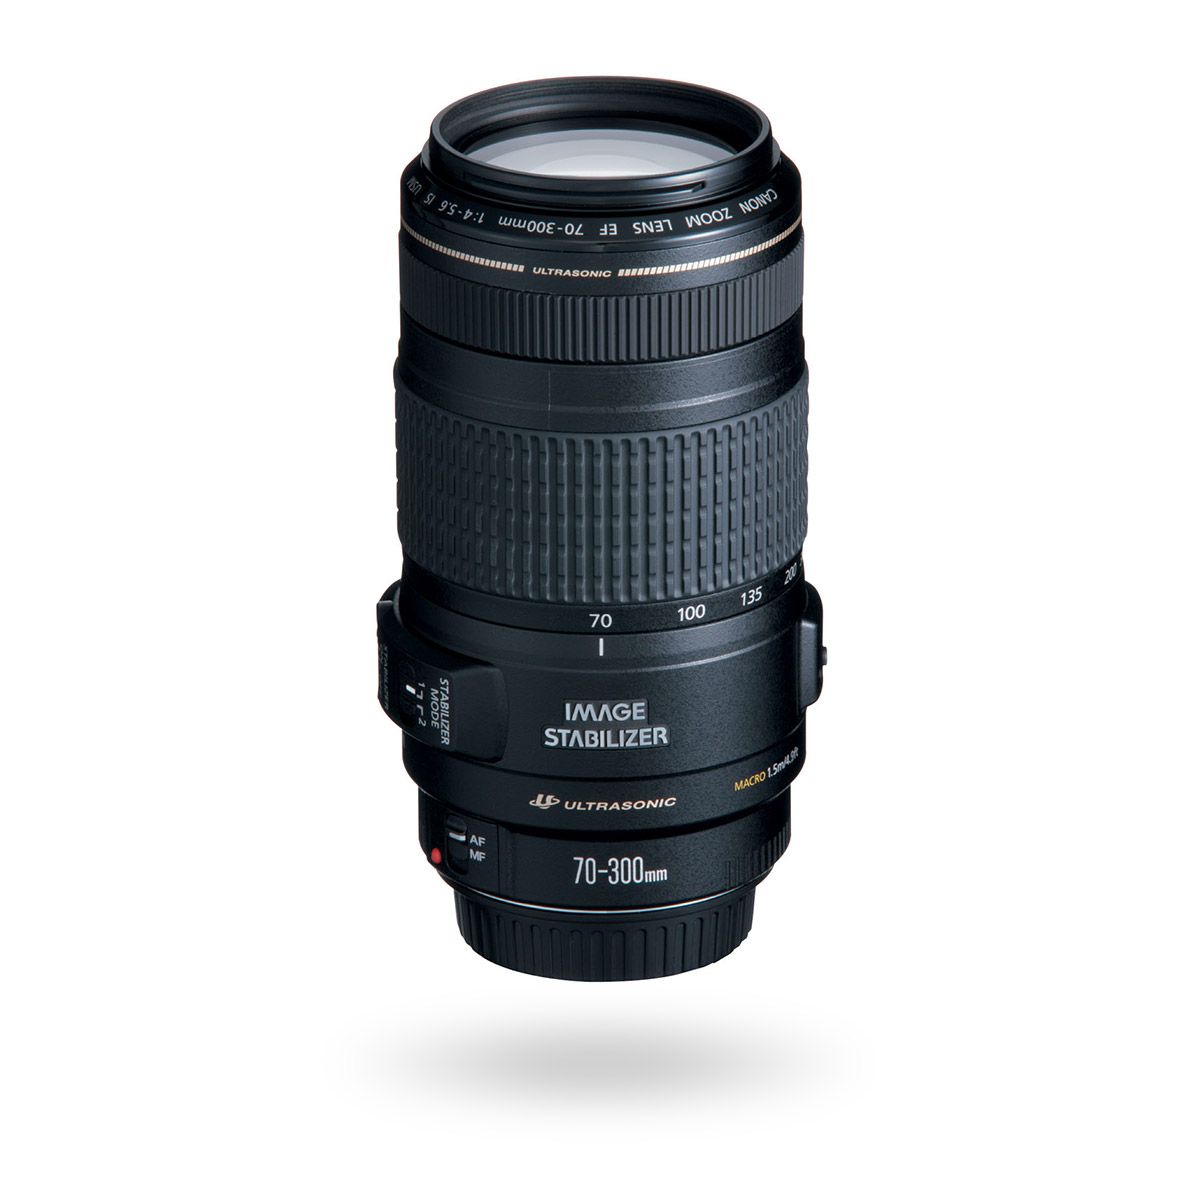 EF 70-300mm f/4-5.6 IS USM lens